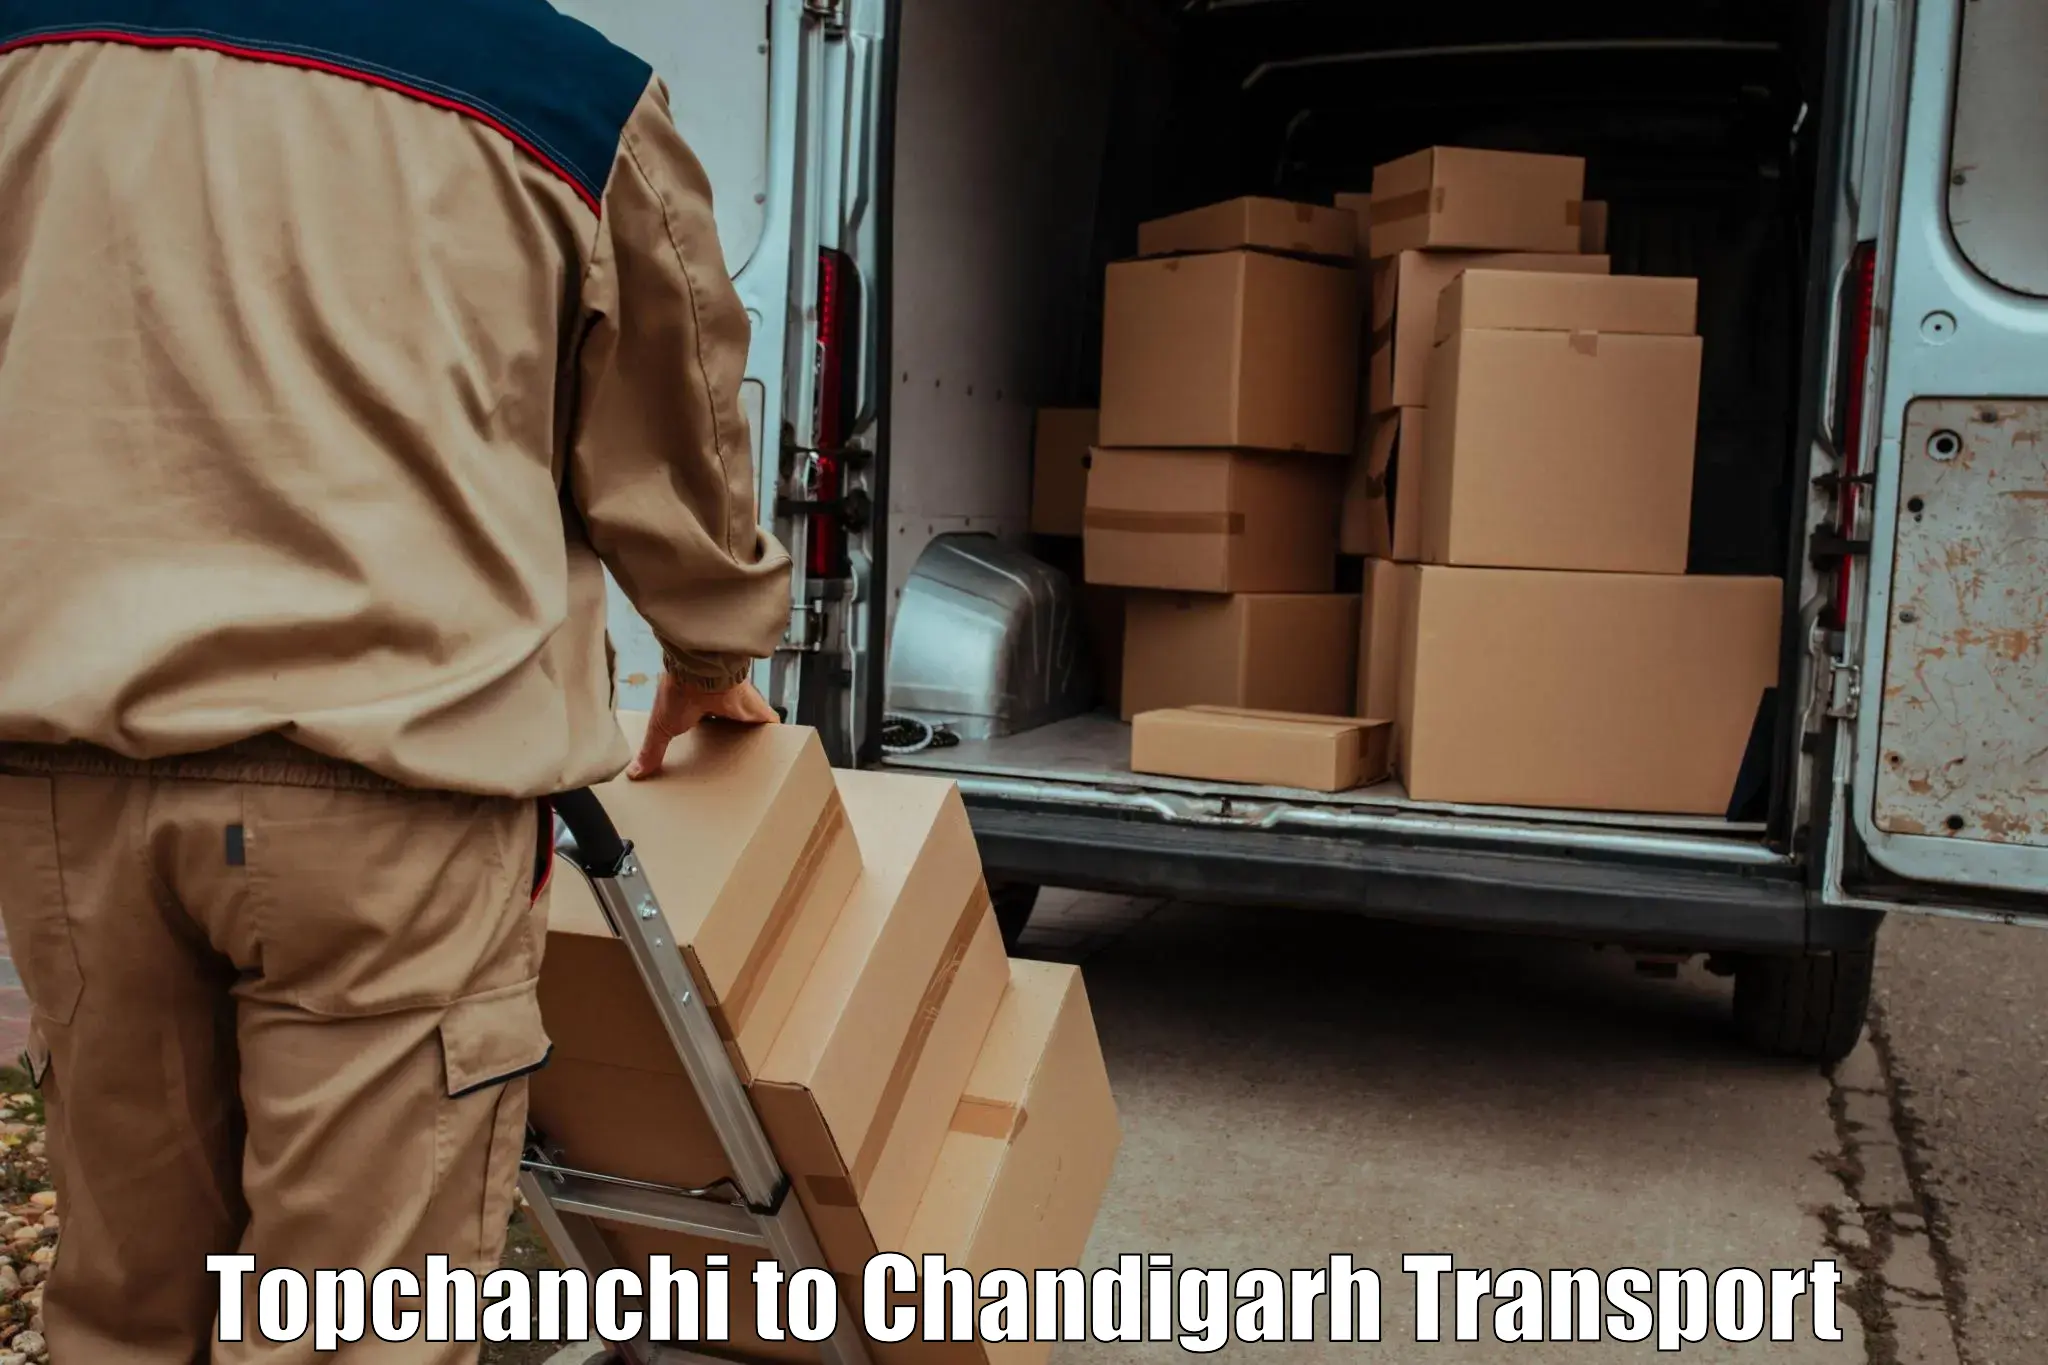 Nearby transport service Topchanchi to Panjab University Chandigarh